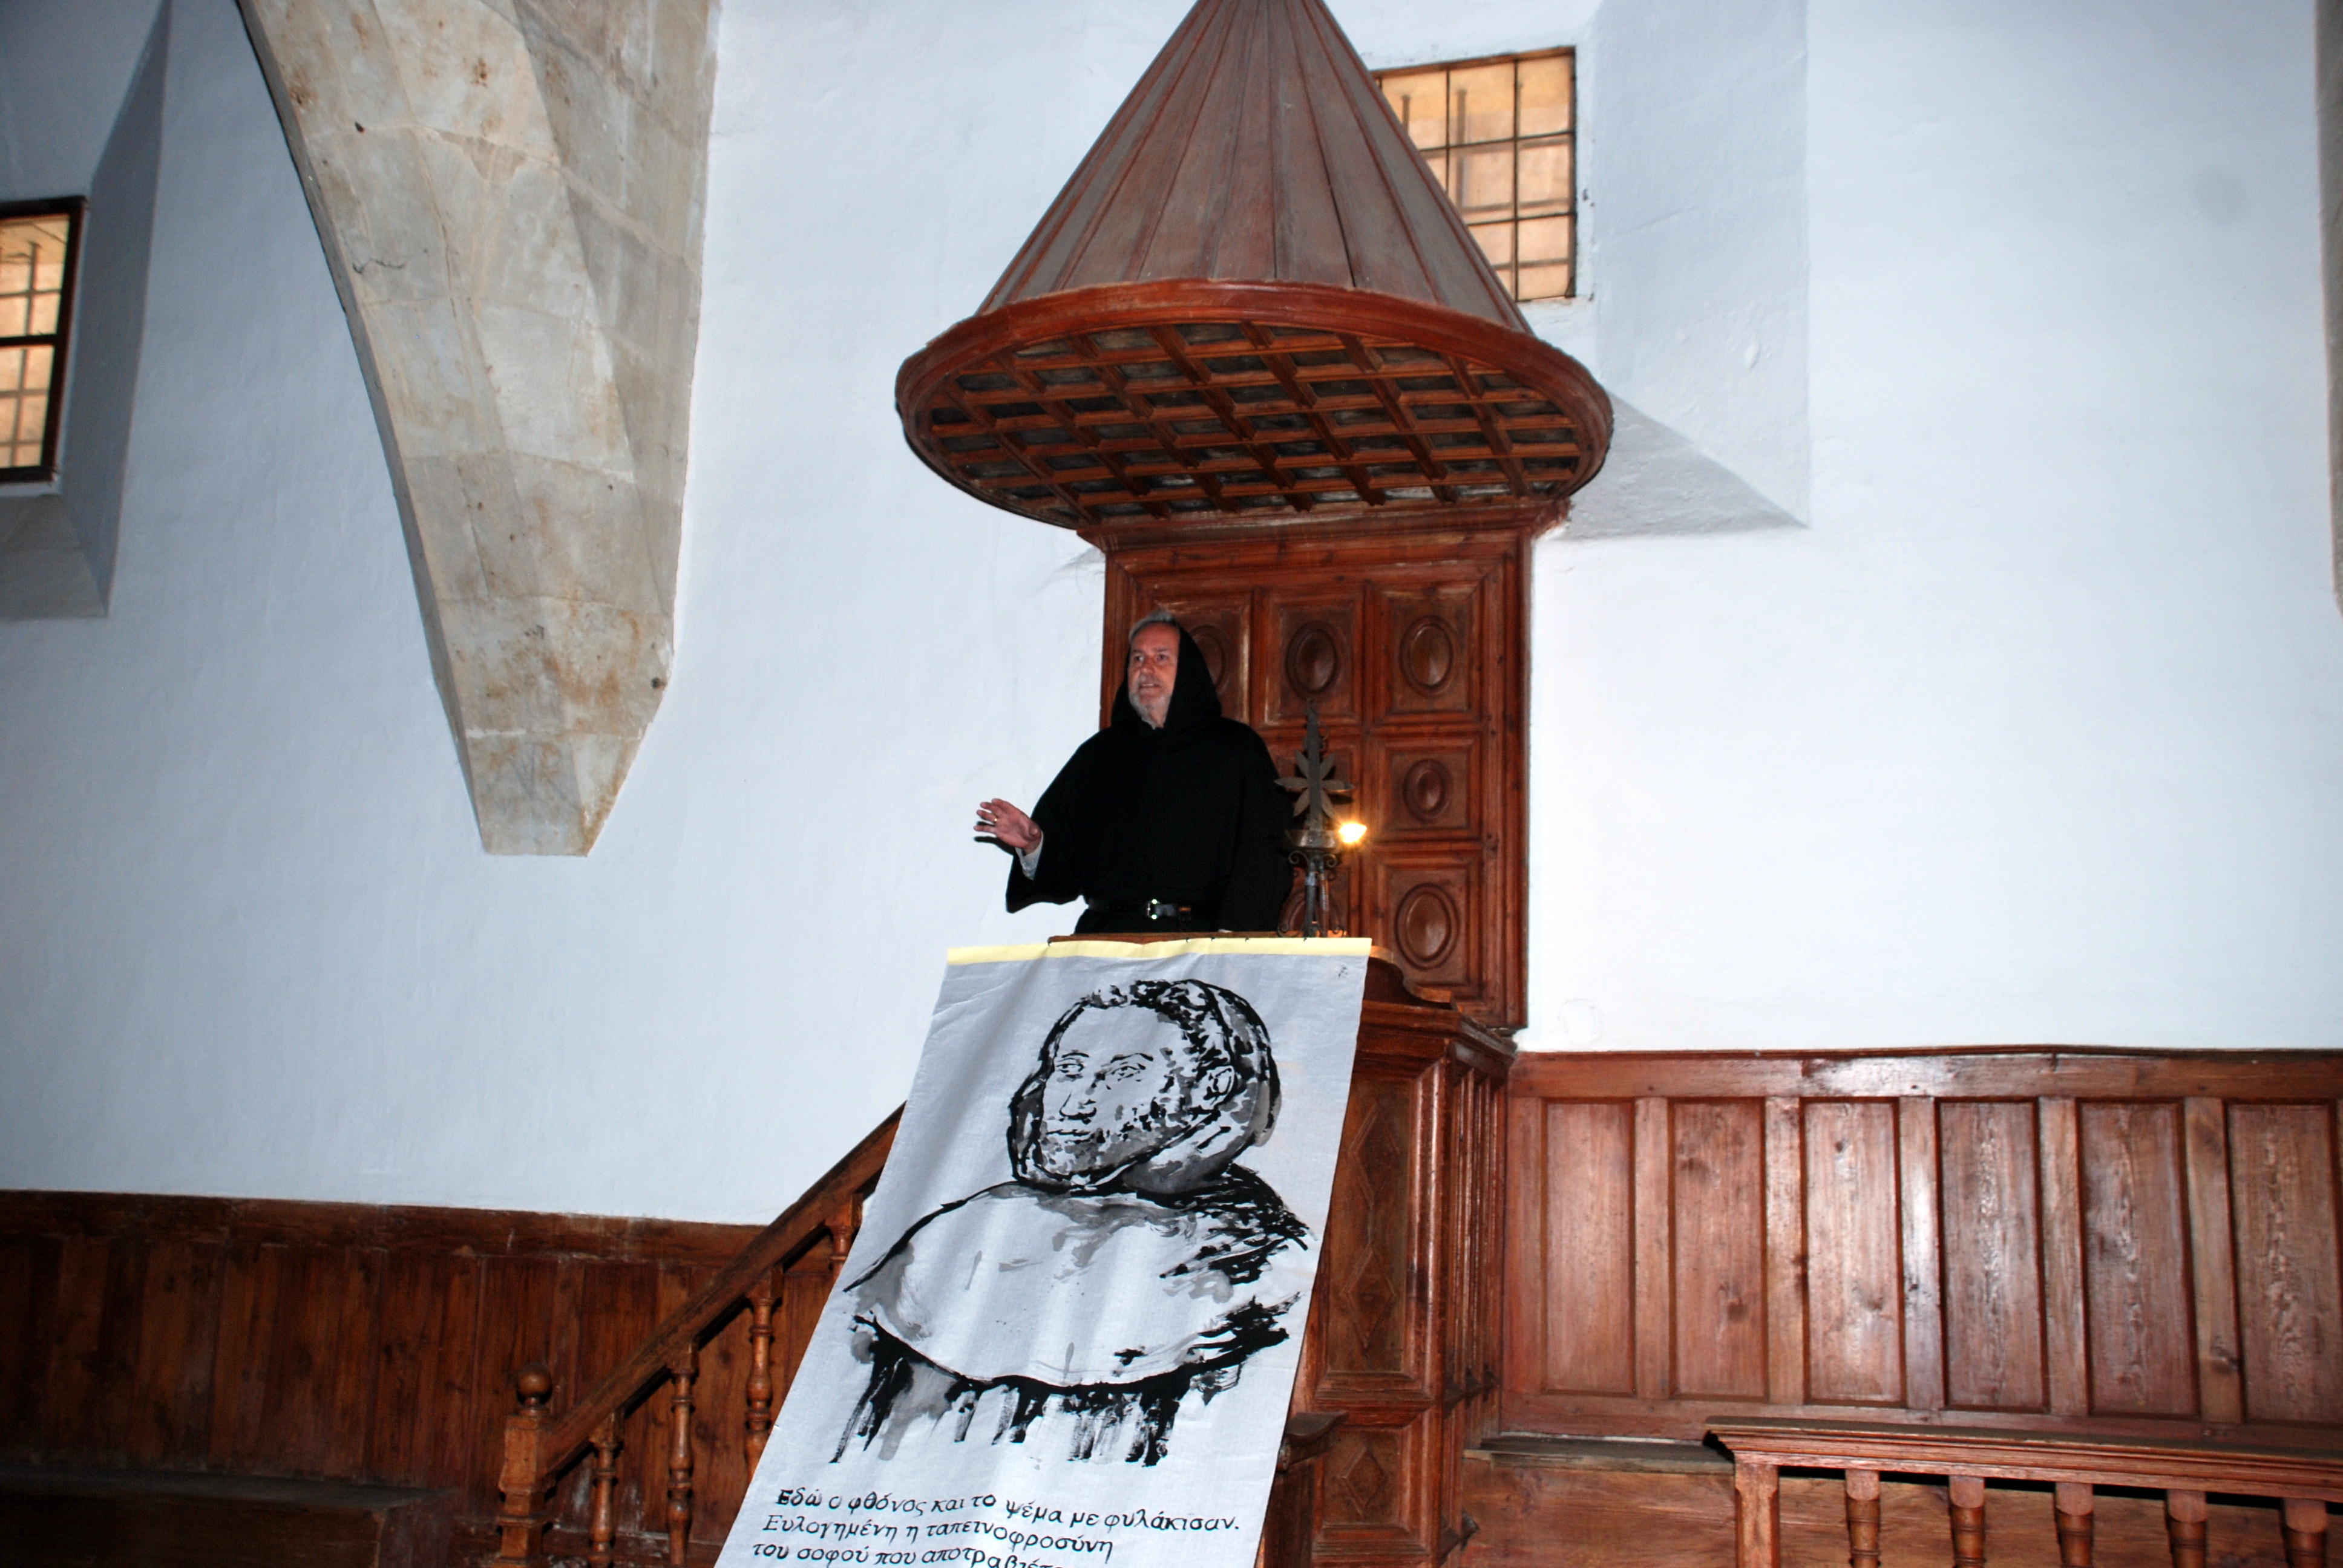 El Aula Fray Luis de León acoge un acto de donación de un rollo de bambú de 12 metros como homenaje al poeta y humanista